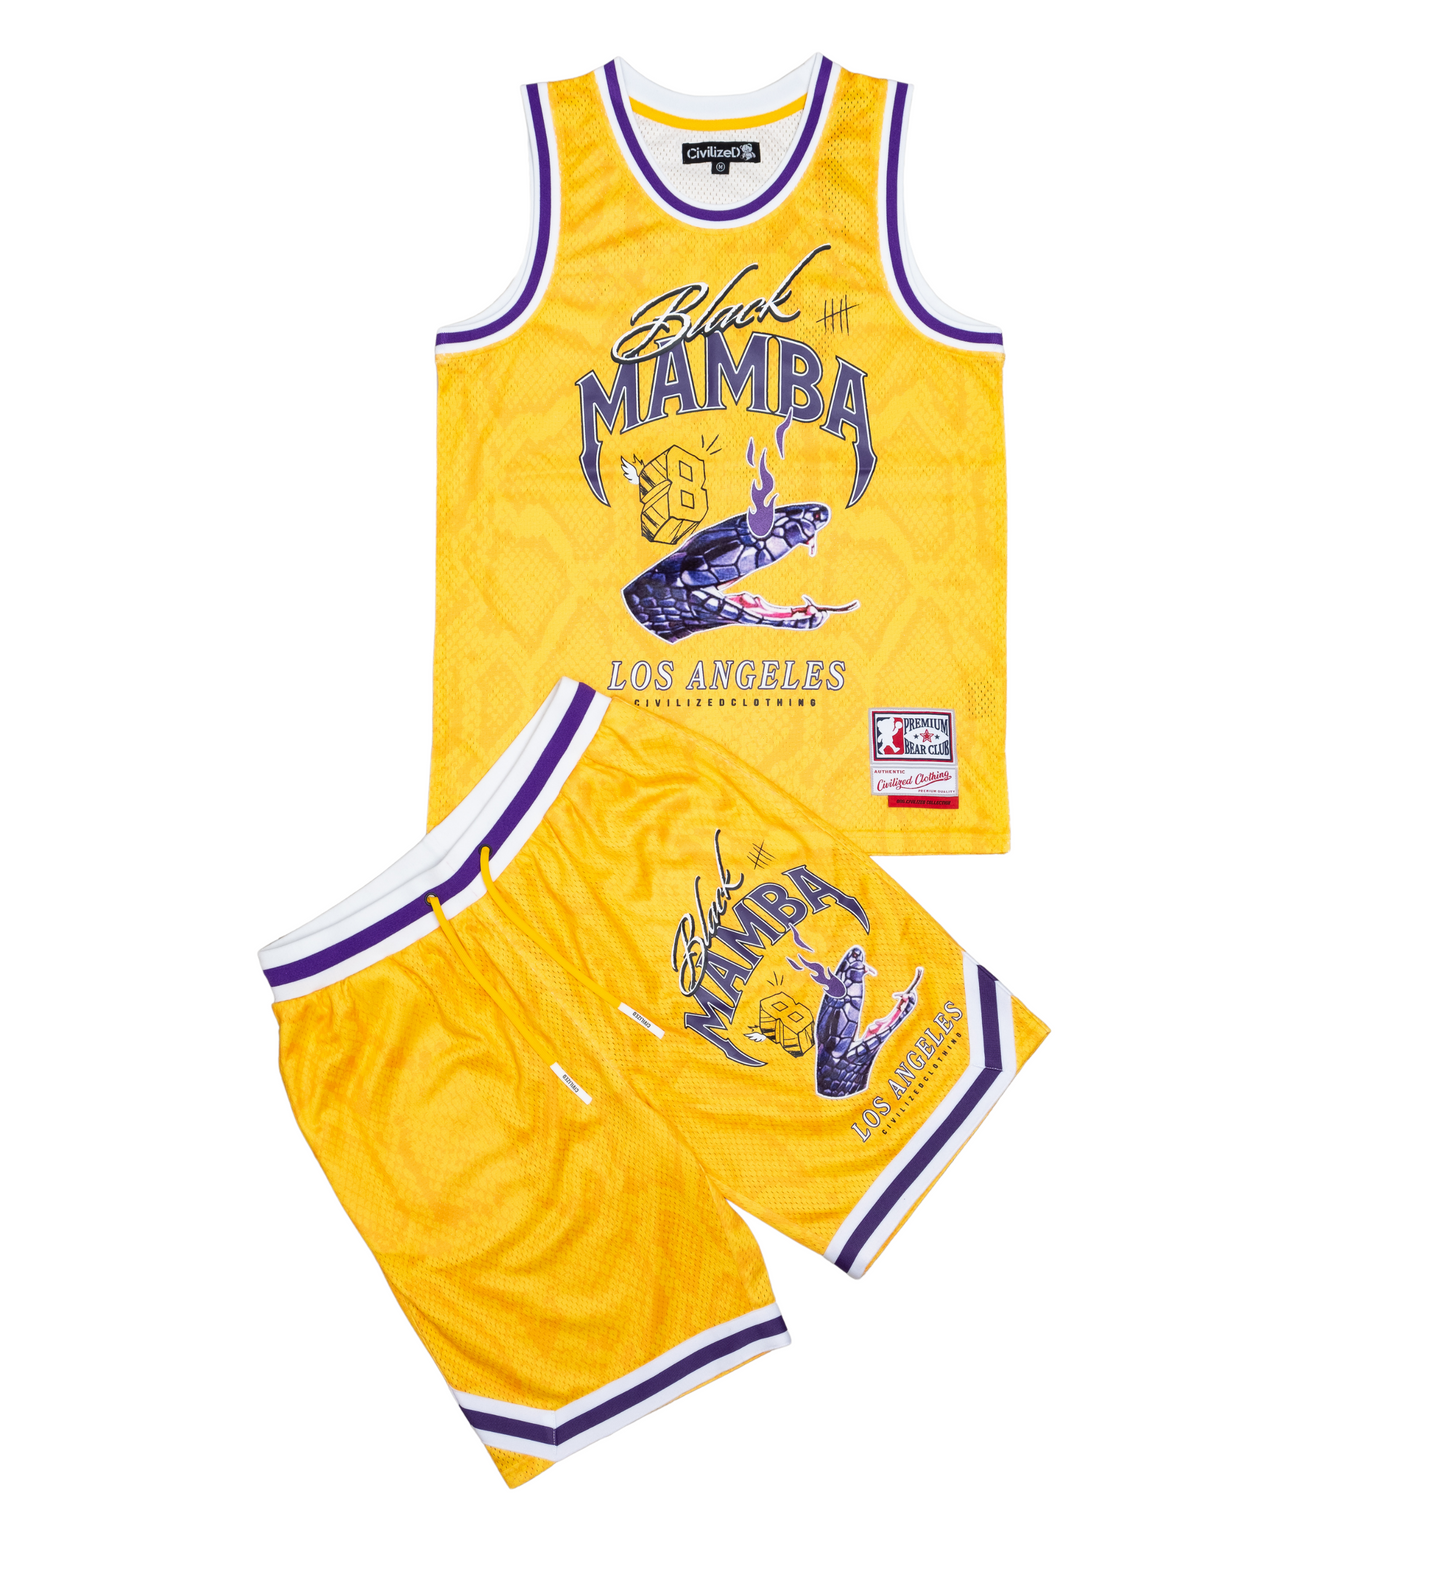 Black Mamba Basketball Jersey + Short Set